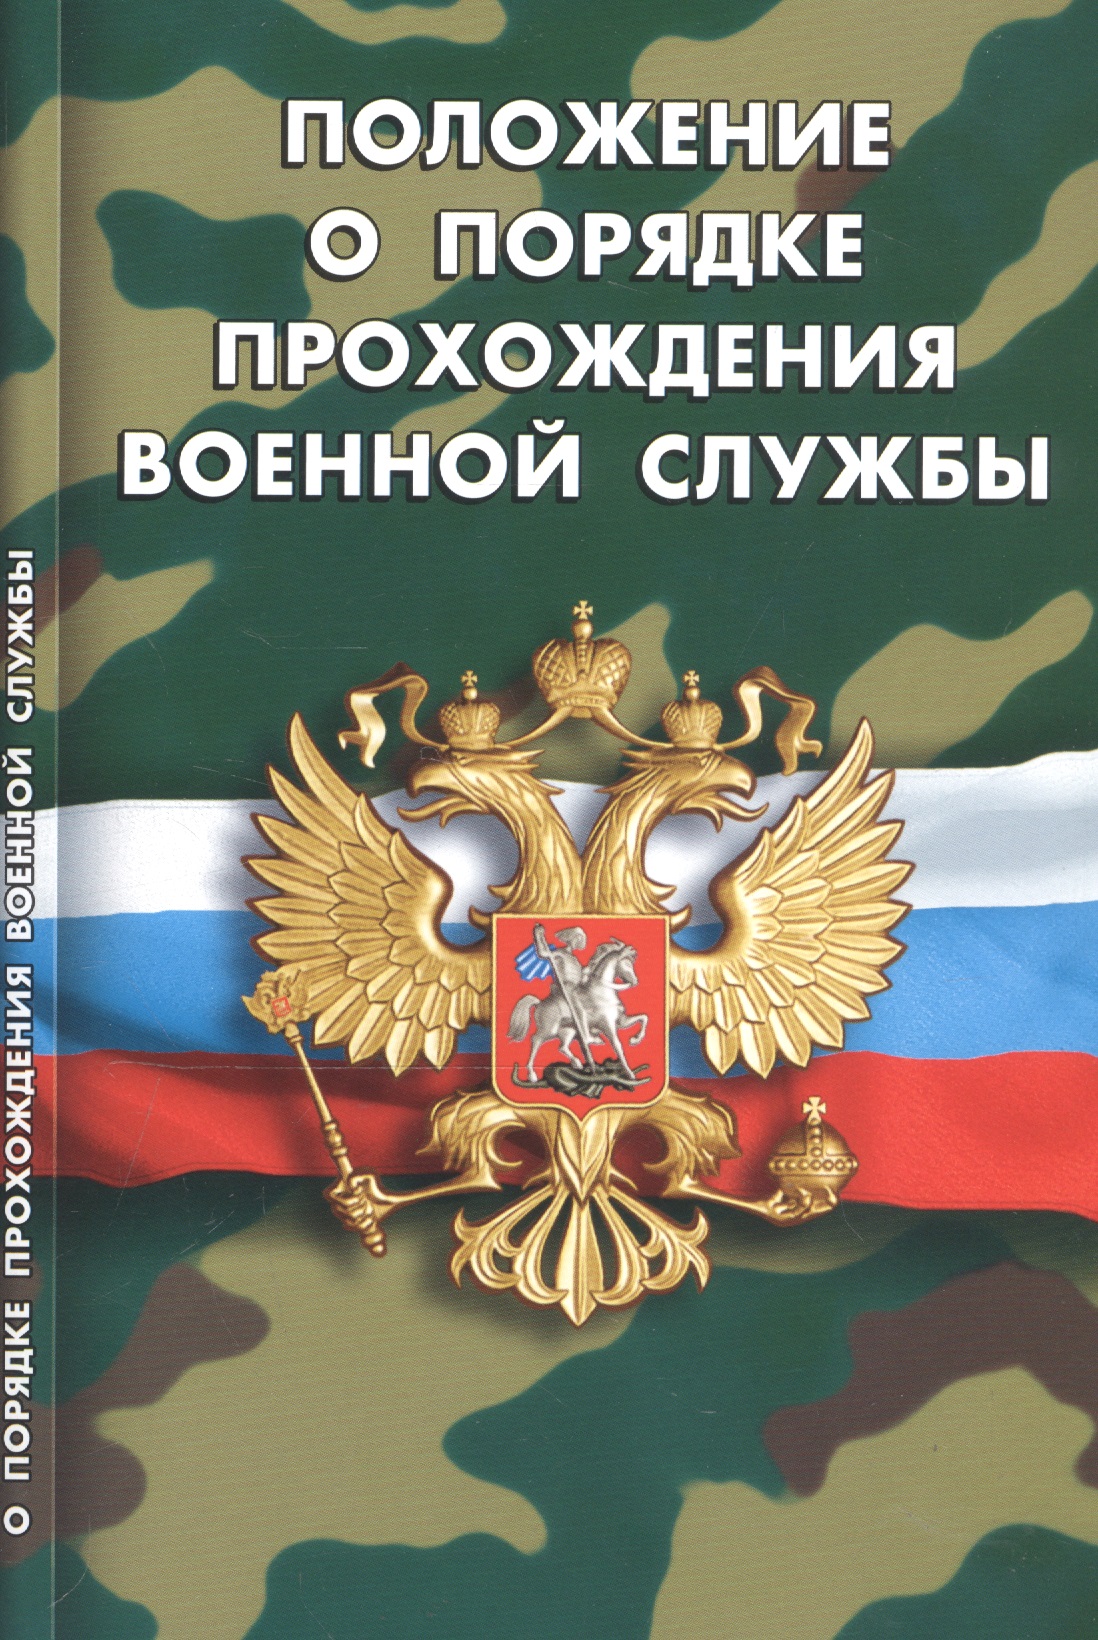 Положение о порядке прохождения военной службы (мВоенСл) (2020) порядок организации прохождения службы в органах внутренних дел российской федерации